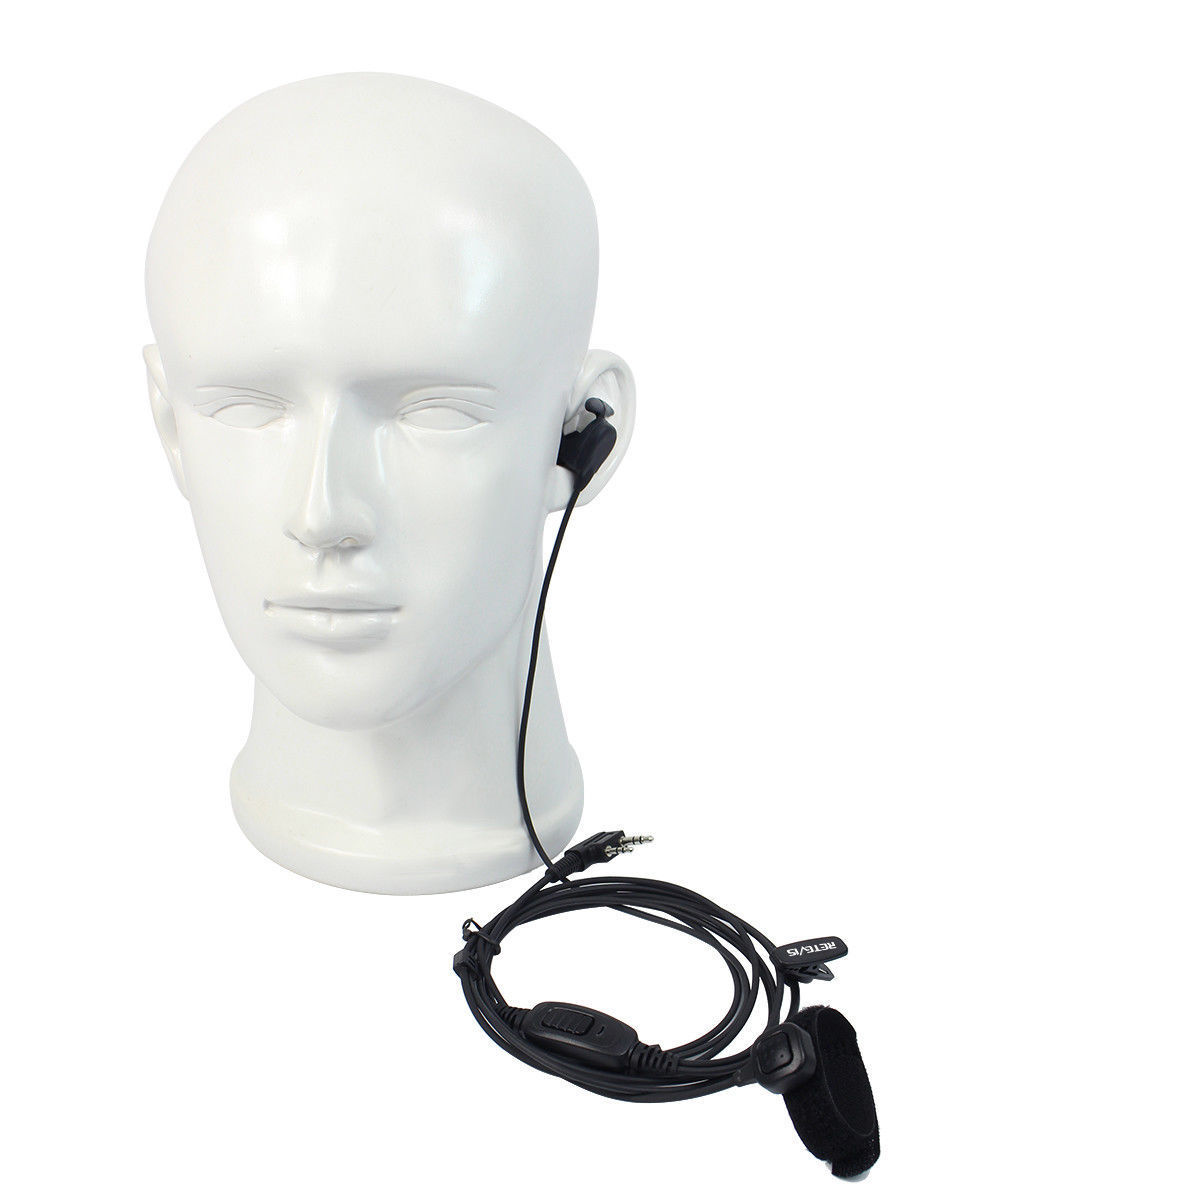 Ear Bone Vibration Earpiece 2-Wire Dual PTT Kenwood 2Pin